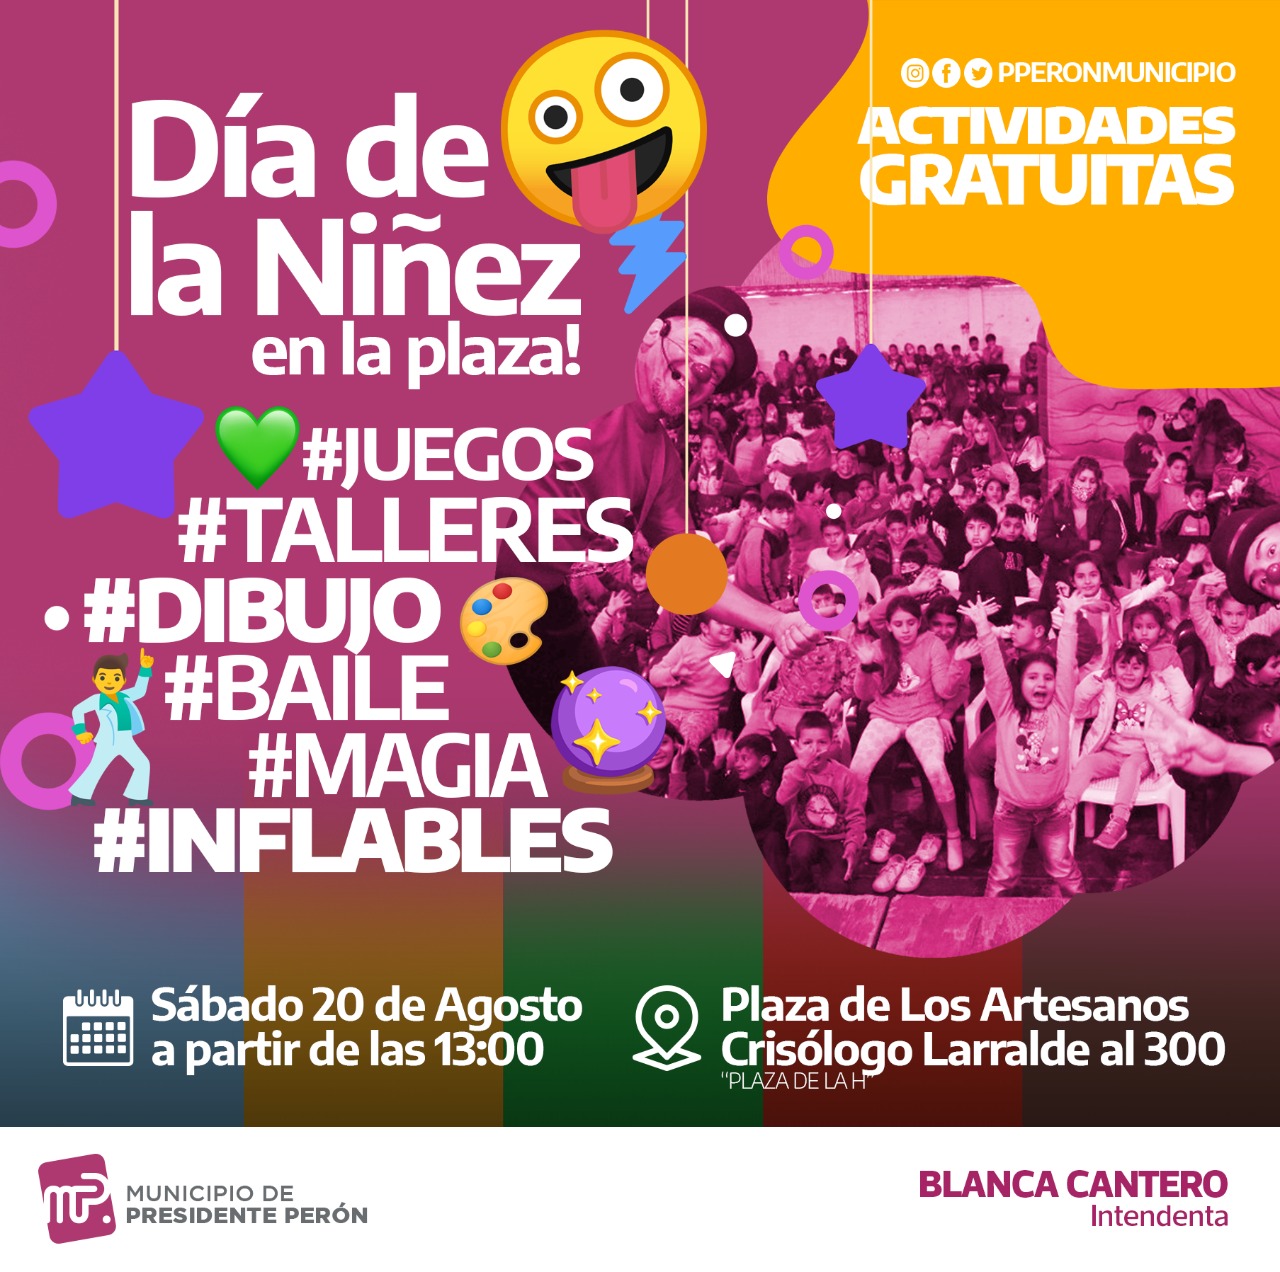 DÍA DE LA NIÑEZ | El Municipio organiza una jornada infantil gratuita de juegos, diversión y sorpresas